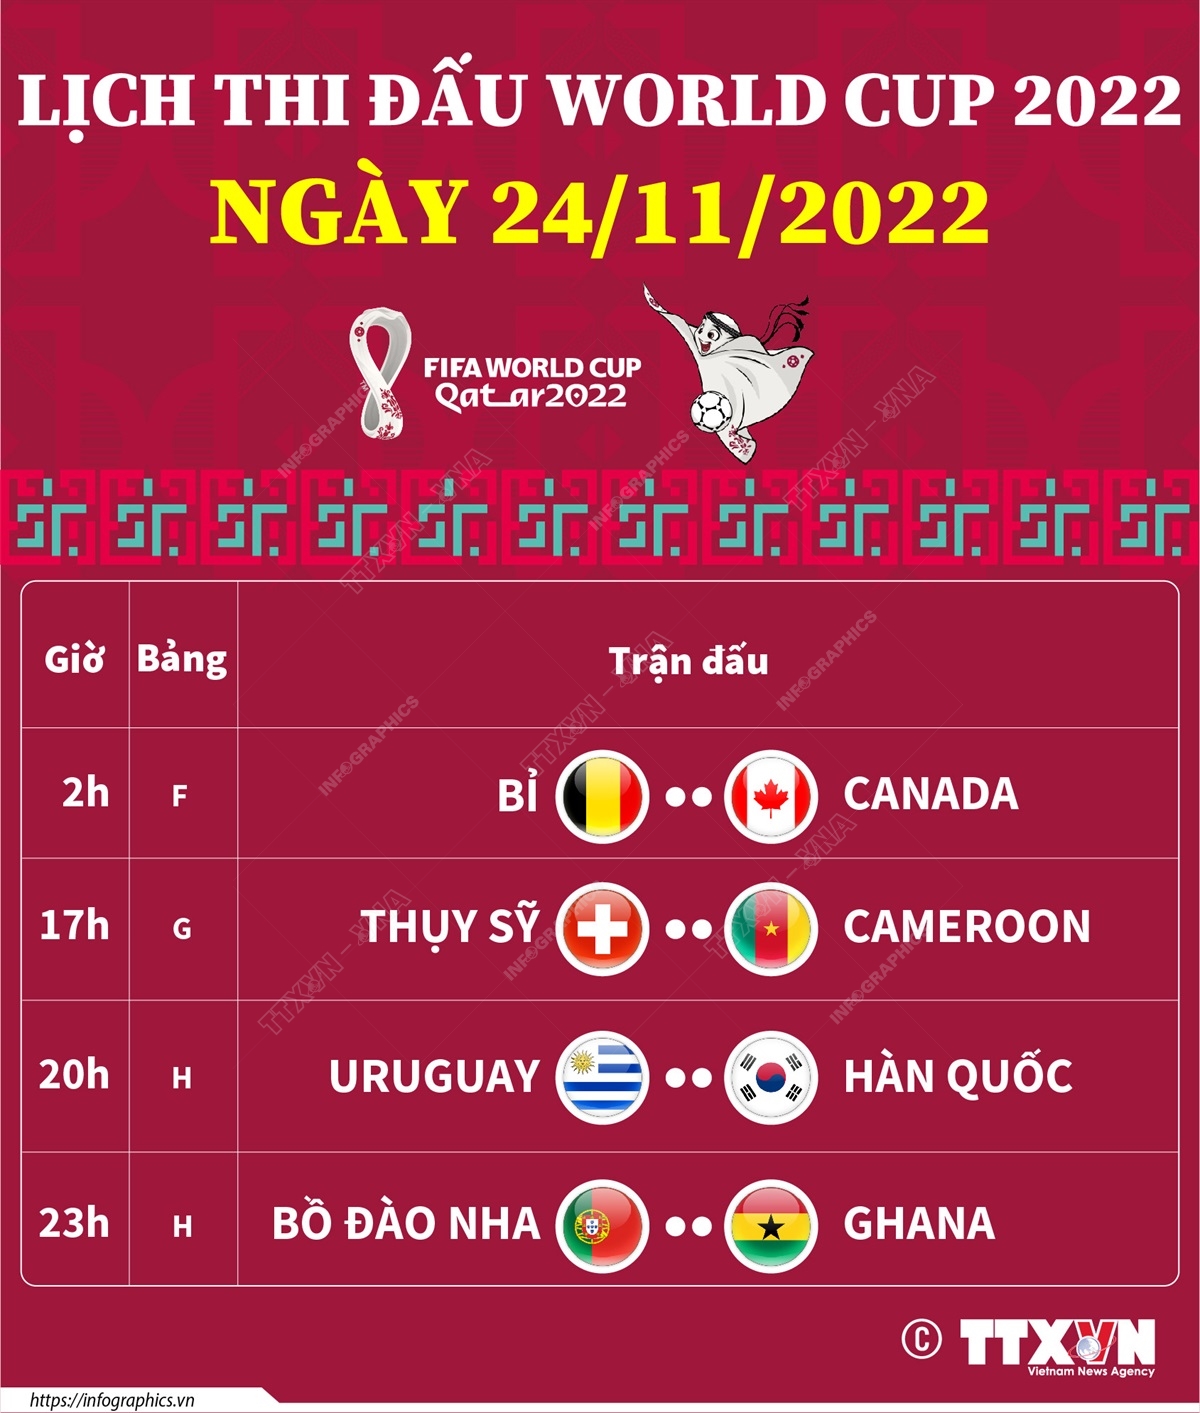 Lịch thi đấu Vòng Chung kết World Cup 2022 ngày 24/11/2022